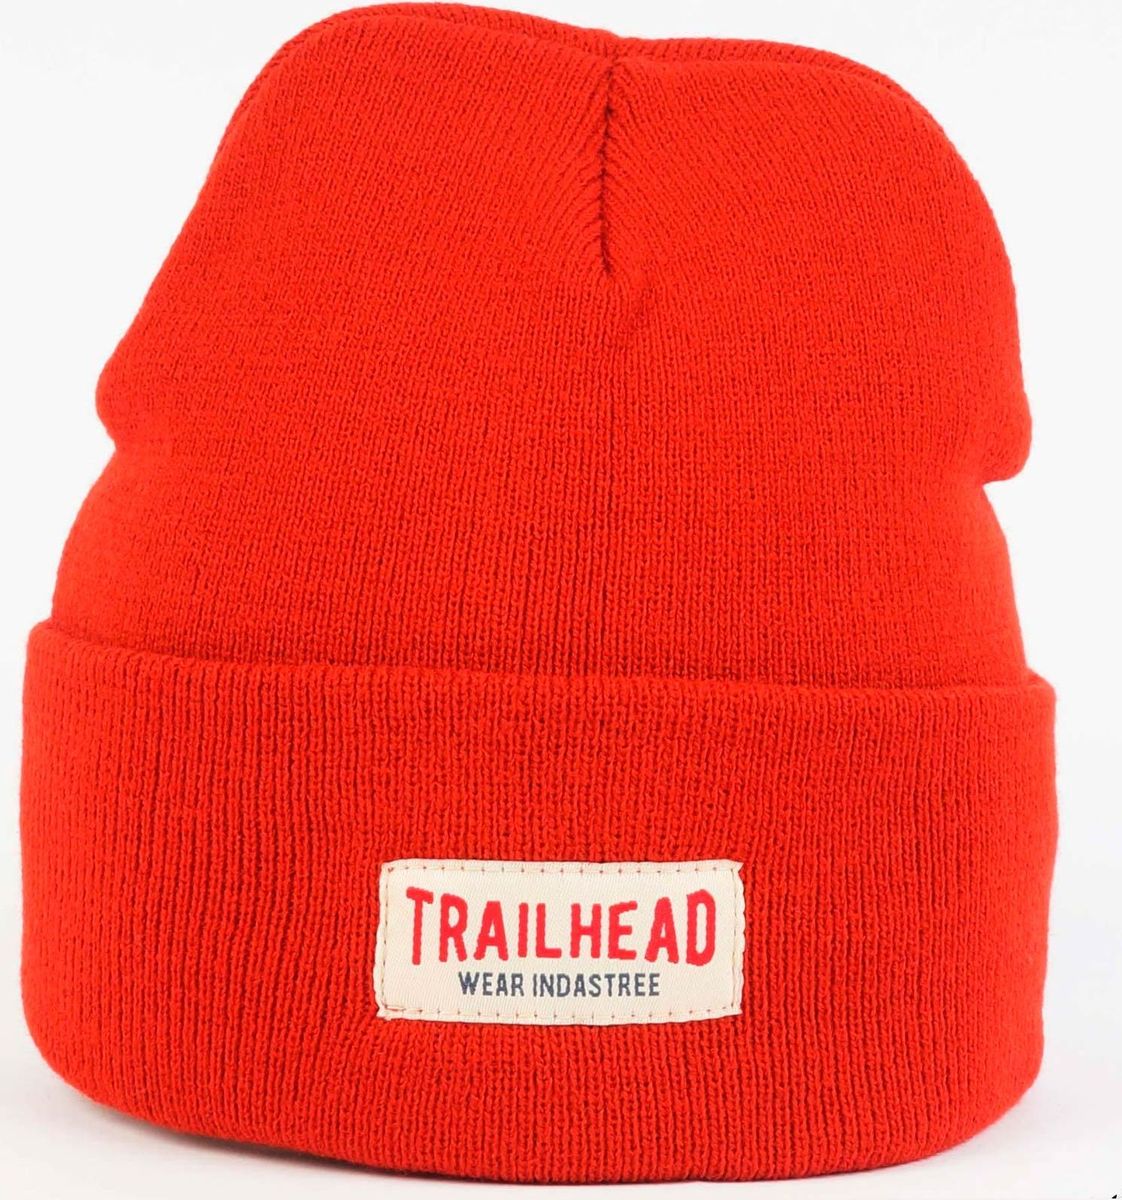 Trailhead шапка красная. Indastree Trailhead шапка зимняя. Кепка Trailhead. Indastree Trailhead шапка зимняя зелёная. Hats 18